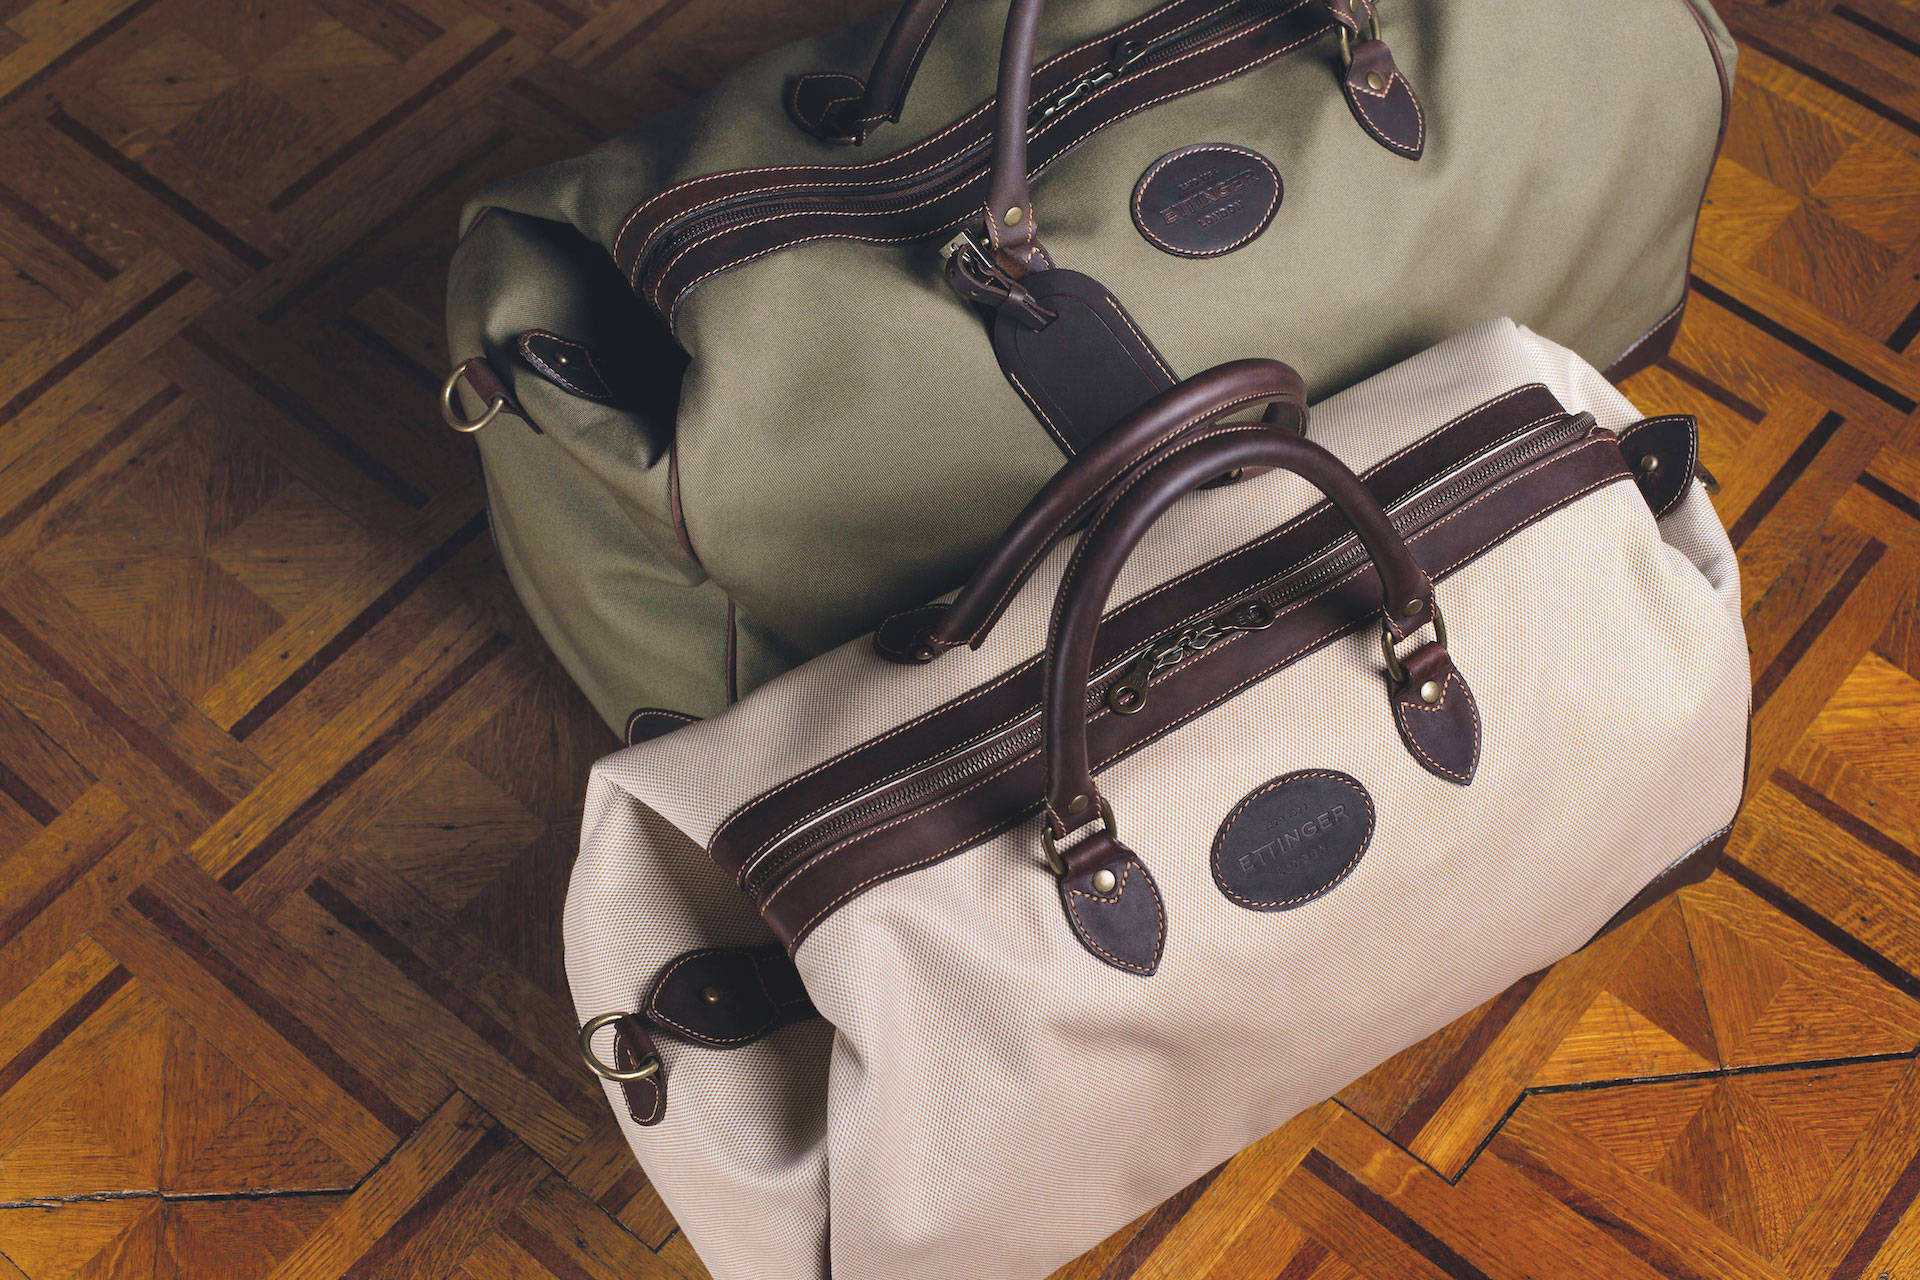 Bags on floor | british men's bag brands